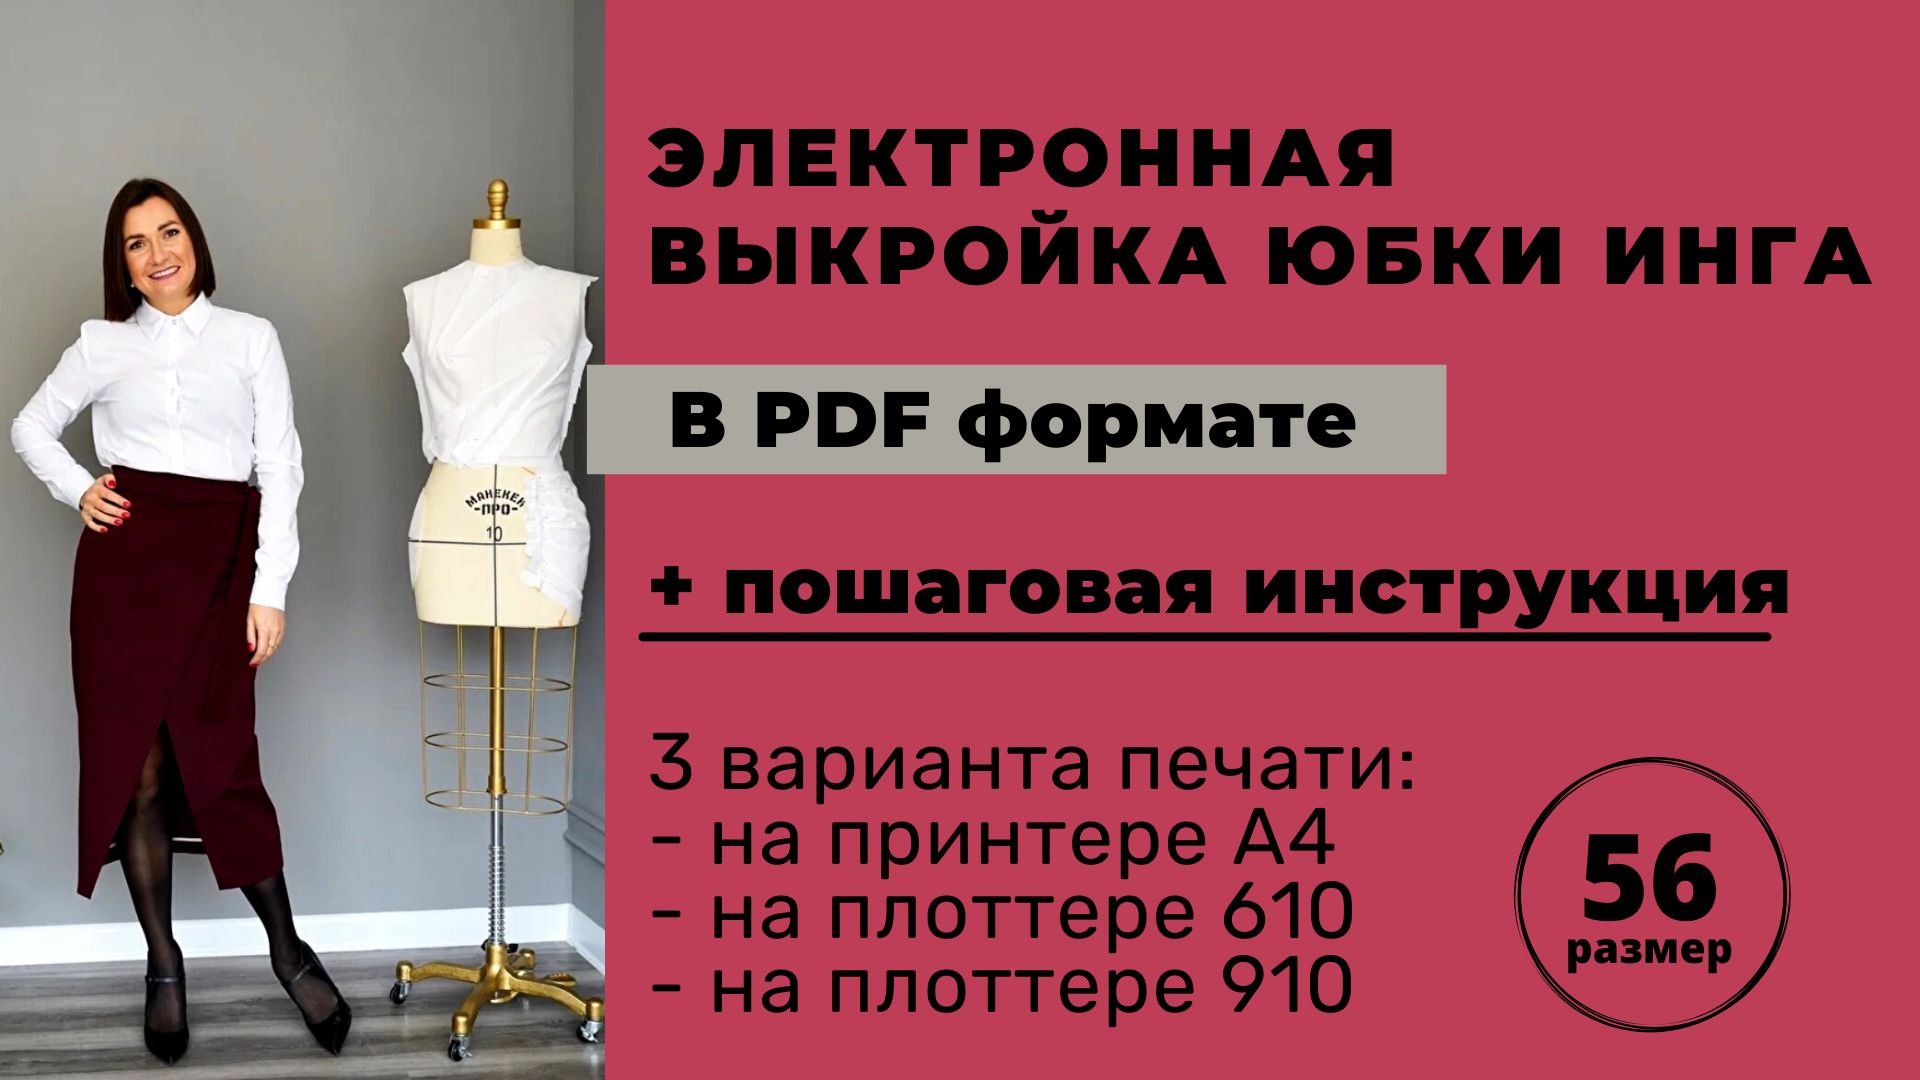 Электронная выкройка юбки Инга размер 56 в формате pdf для печати А4 / плоттер 610 / плоттер 910